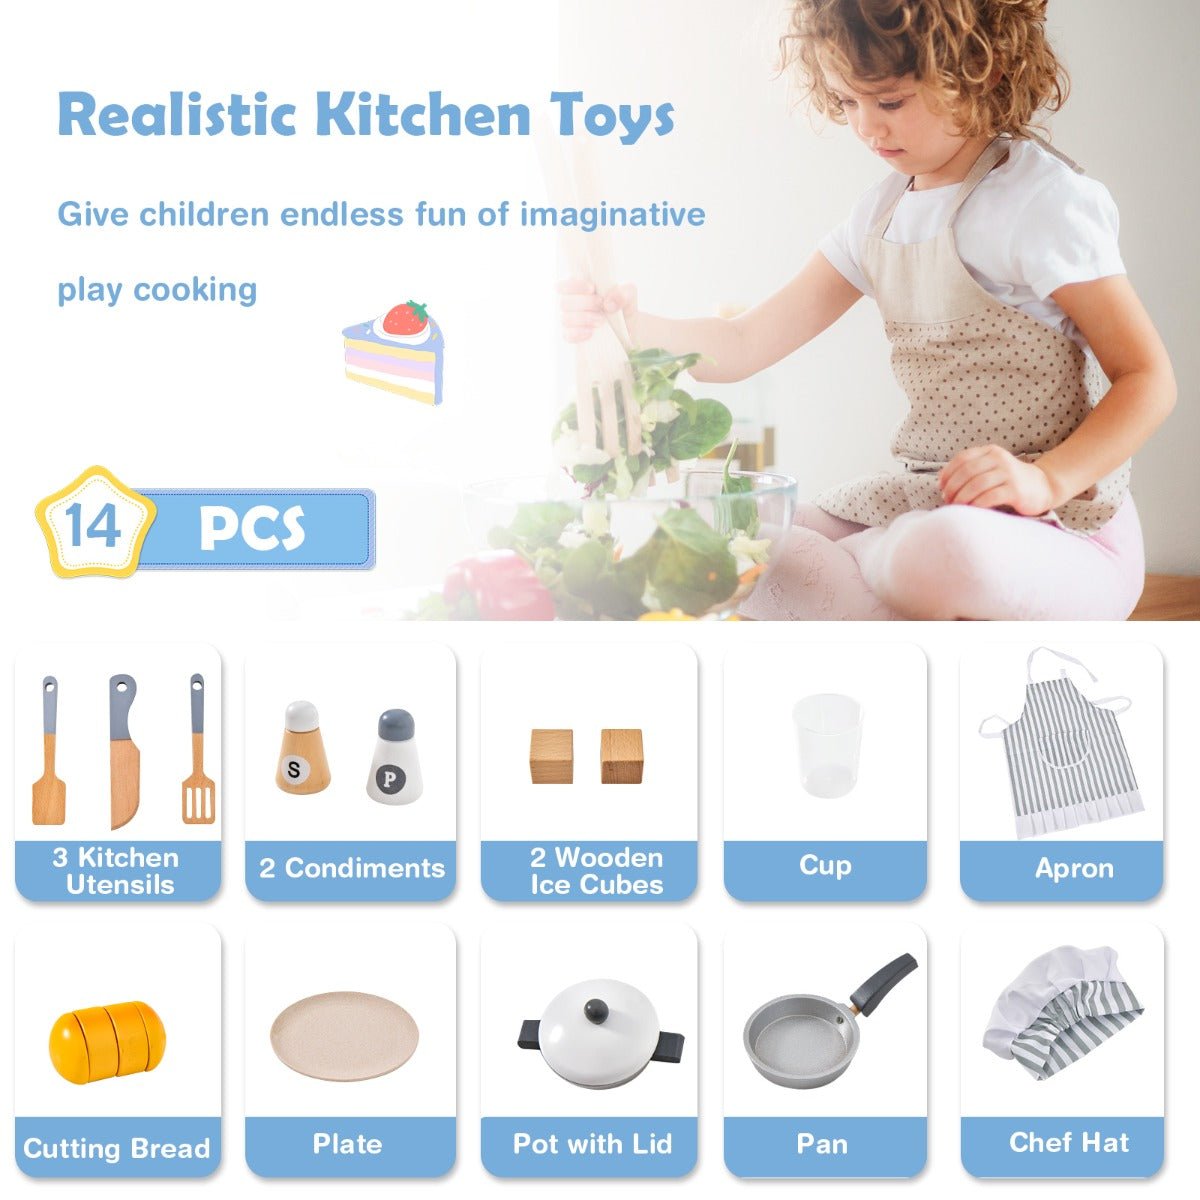 Toddler Friendly Kitchen Playset Storage Options